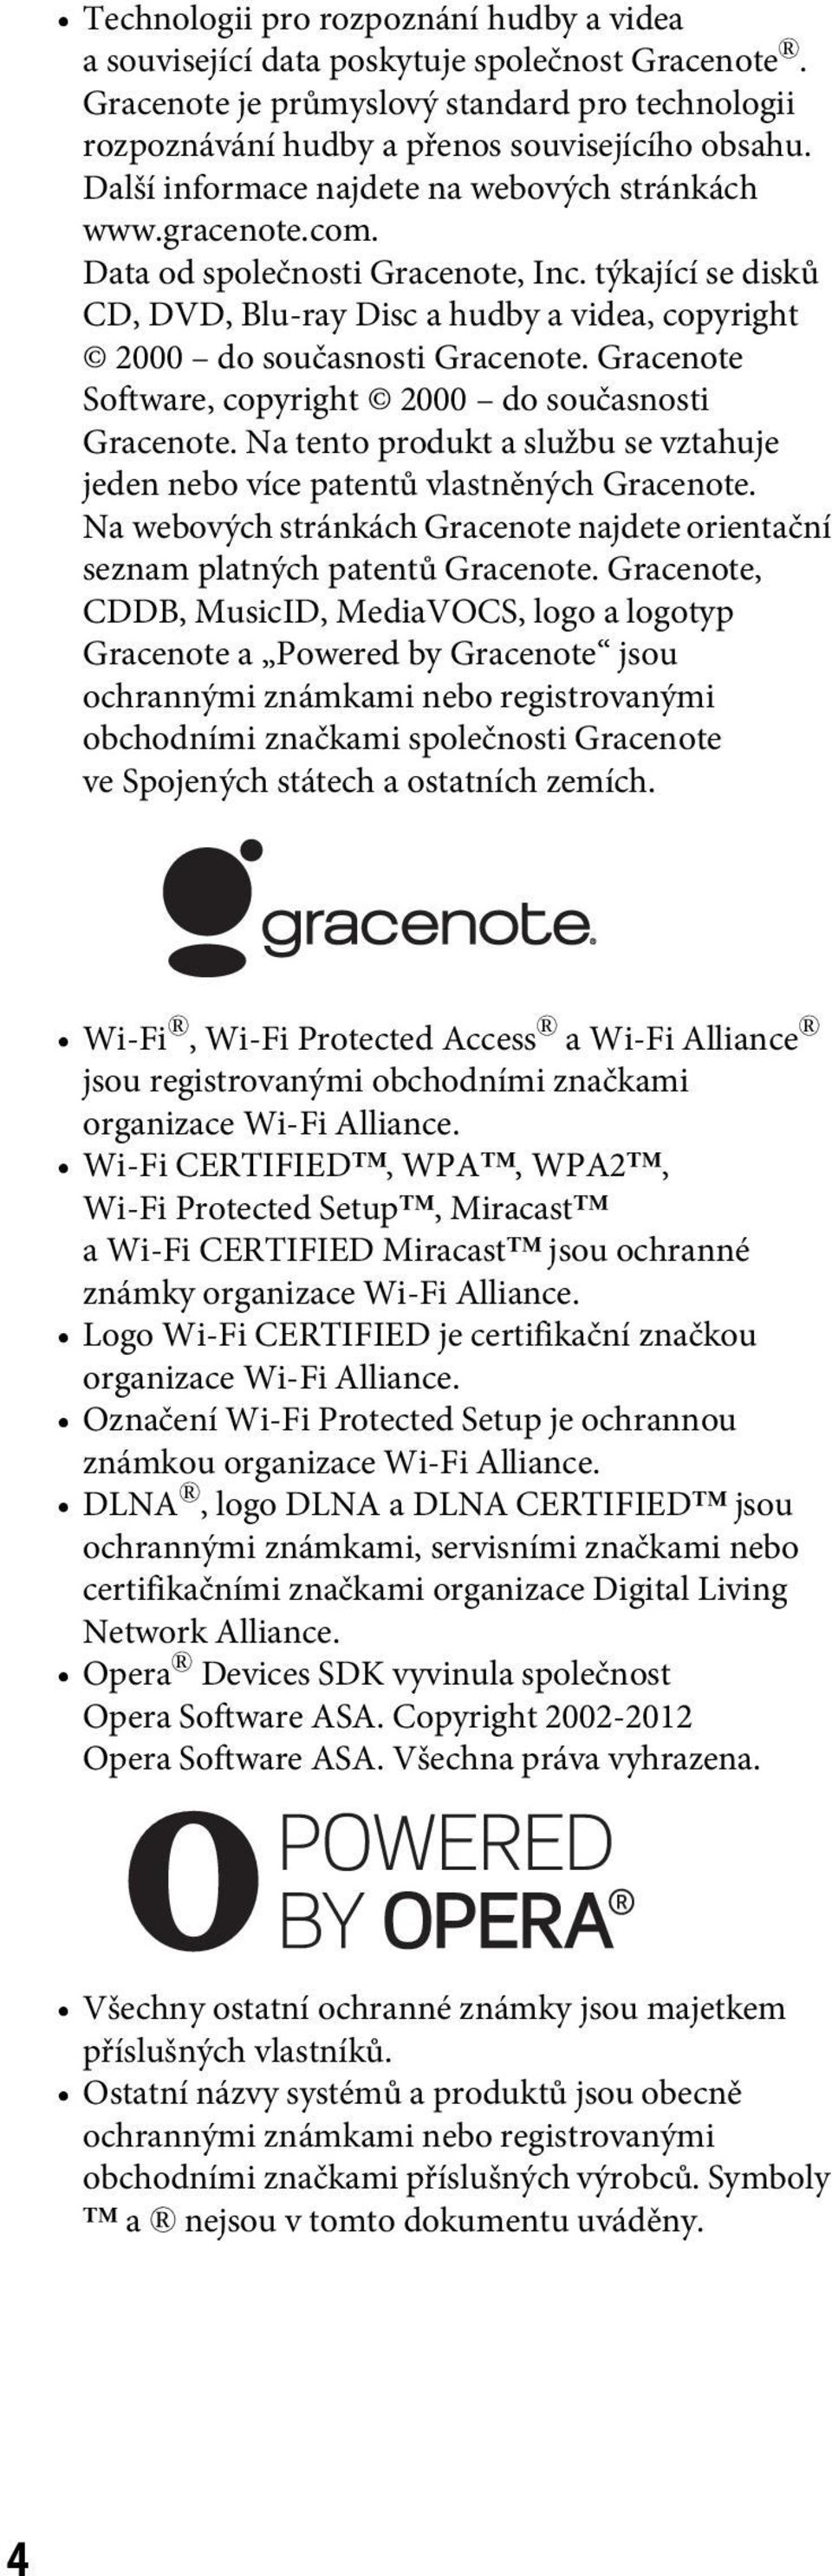 Gracenote Software, copyright 2000 do současnosti Gracenote. Na tento produkt a službu se vztahuje jeden nebo více patentů vlastněných Gracenote.